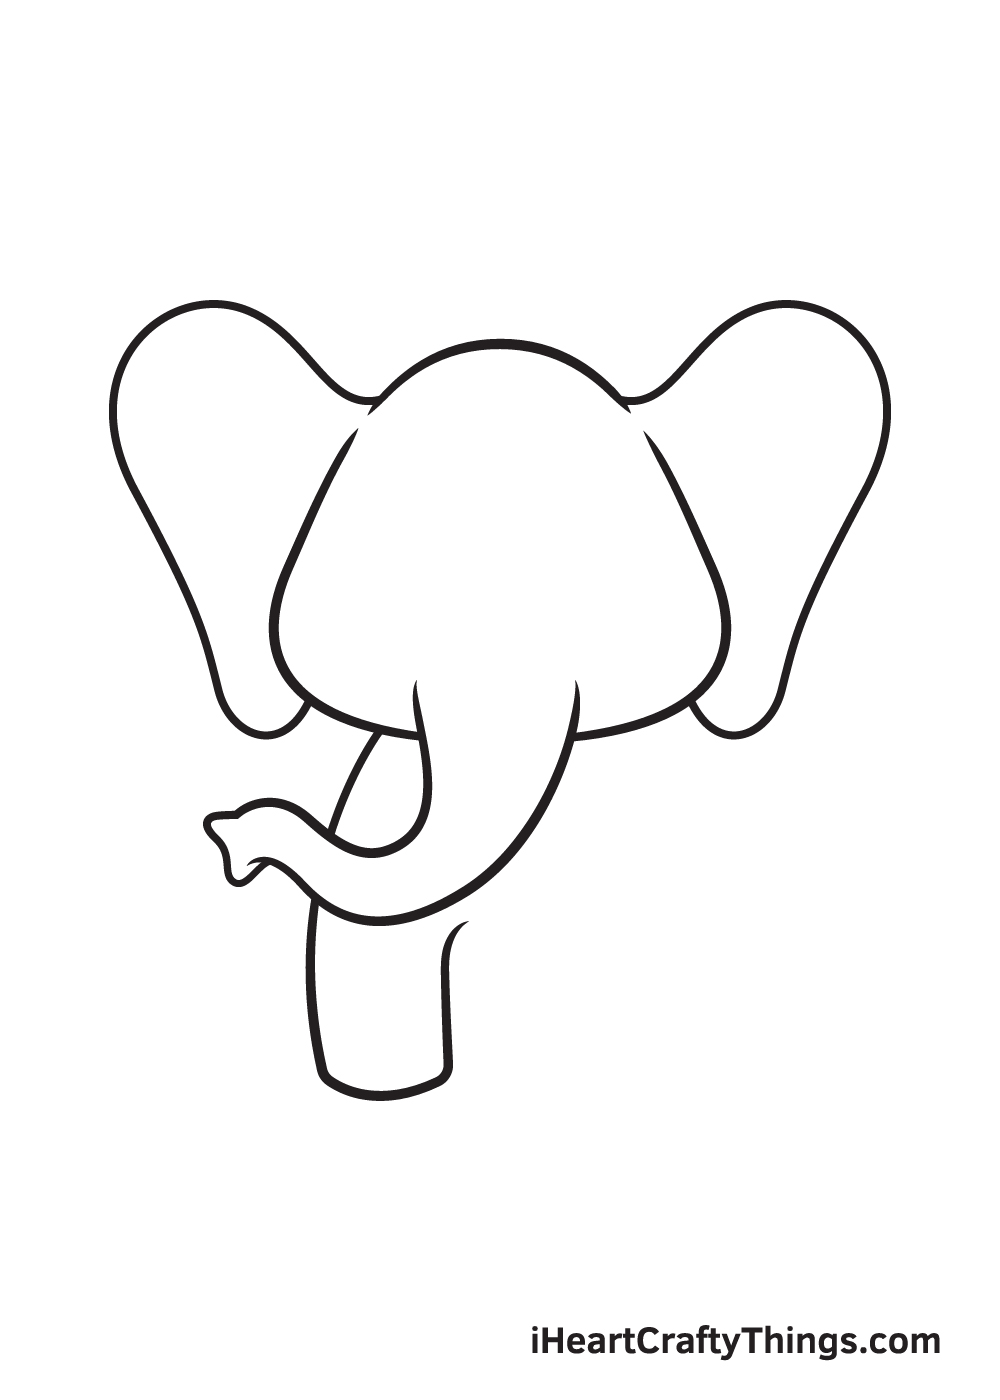 Elephant DRAWING – STEP 4 - Hướng dẫn chi tiết cách vẽ con voi đơn giản với 6 bước cơ bản